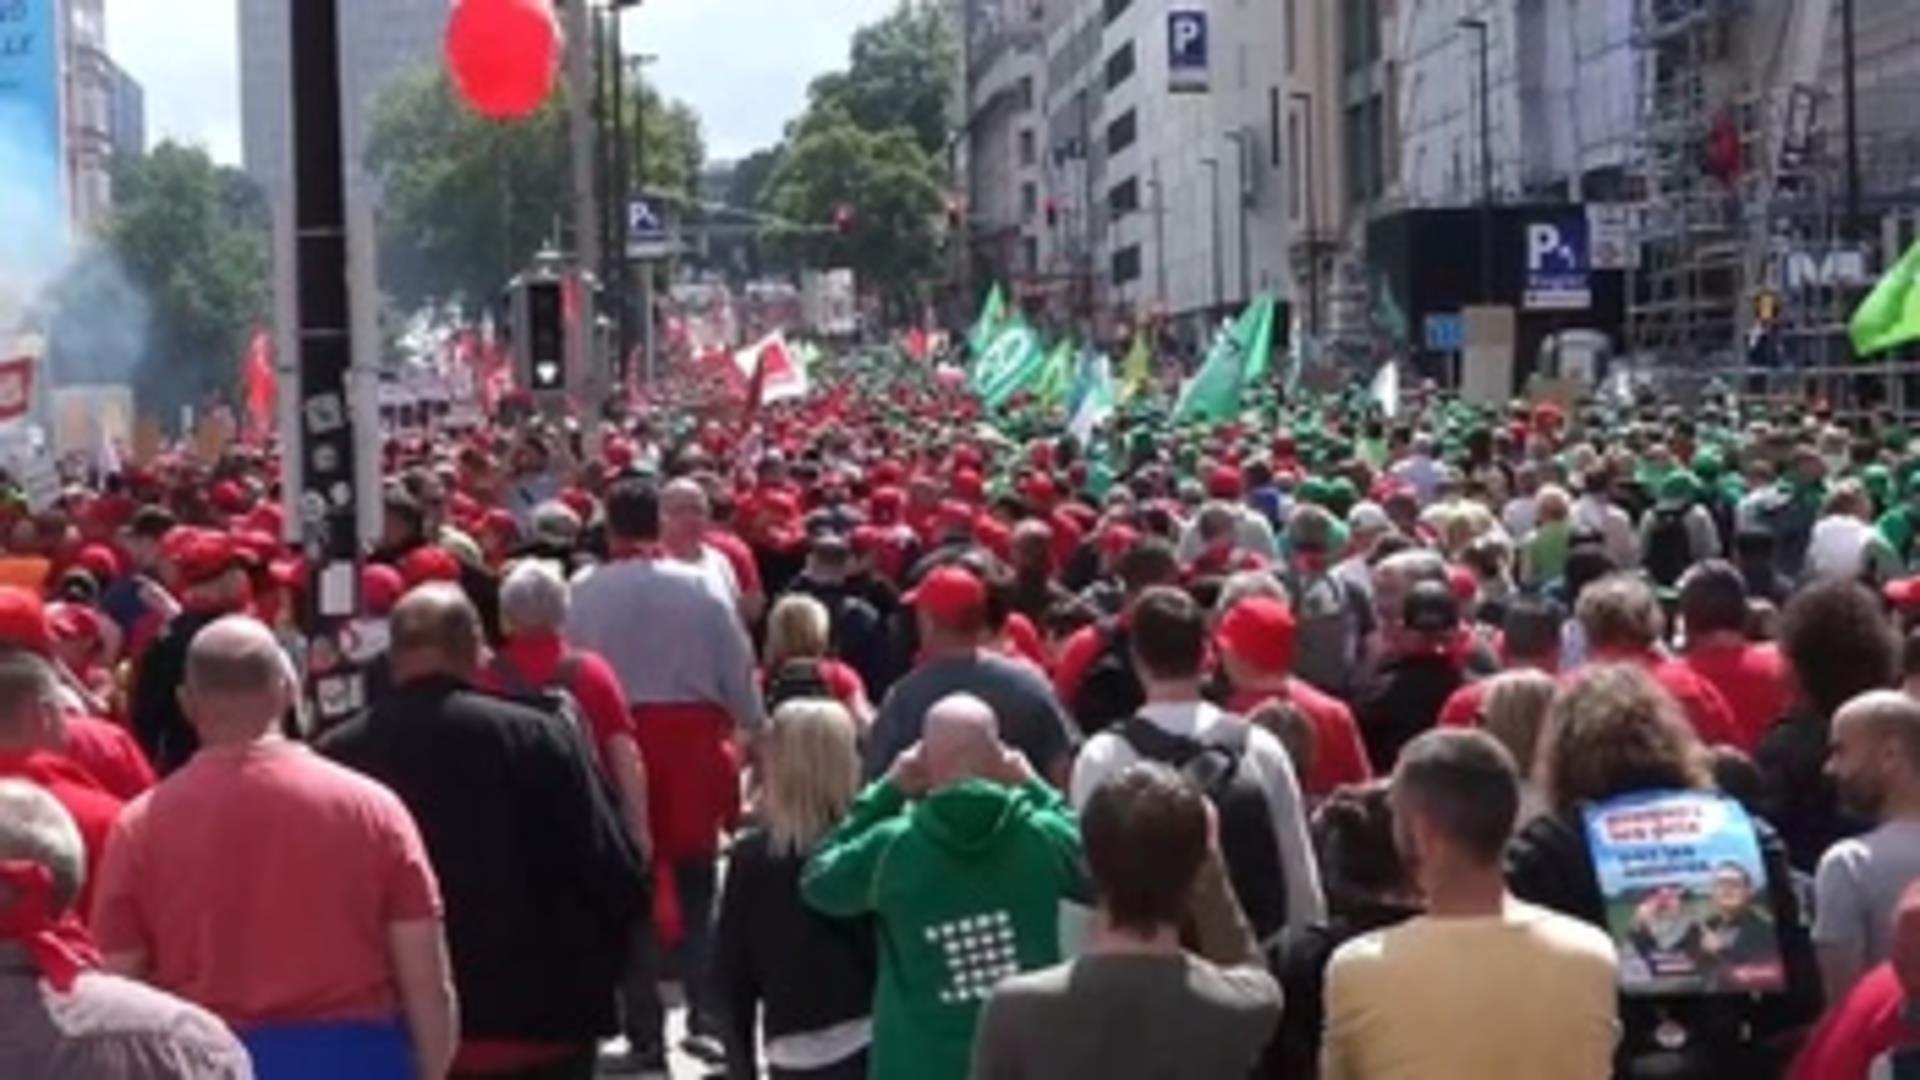 Unas 70.000 personas marchan en Bruselas para pedir más poder adquisitivo